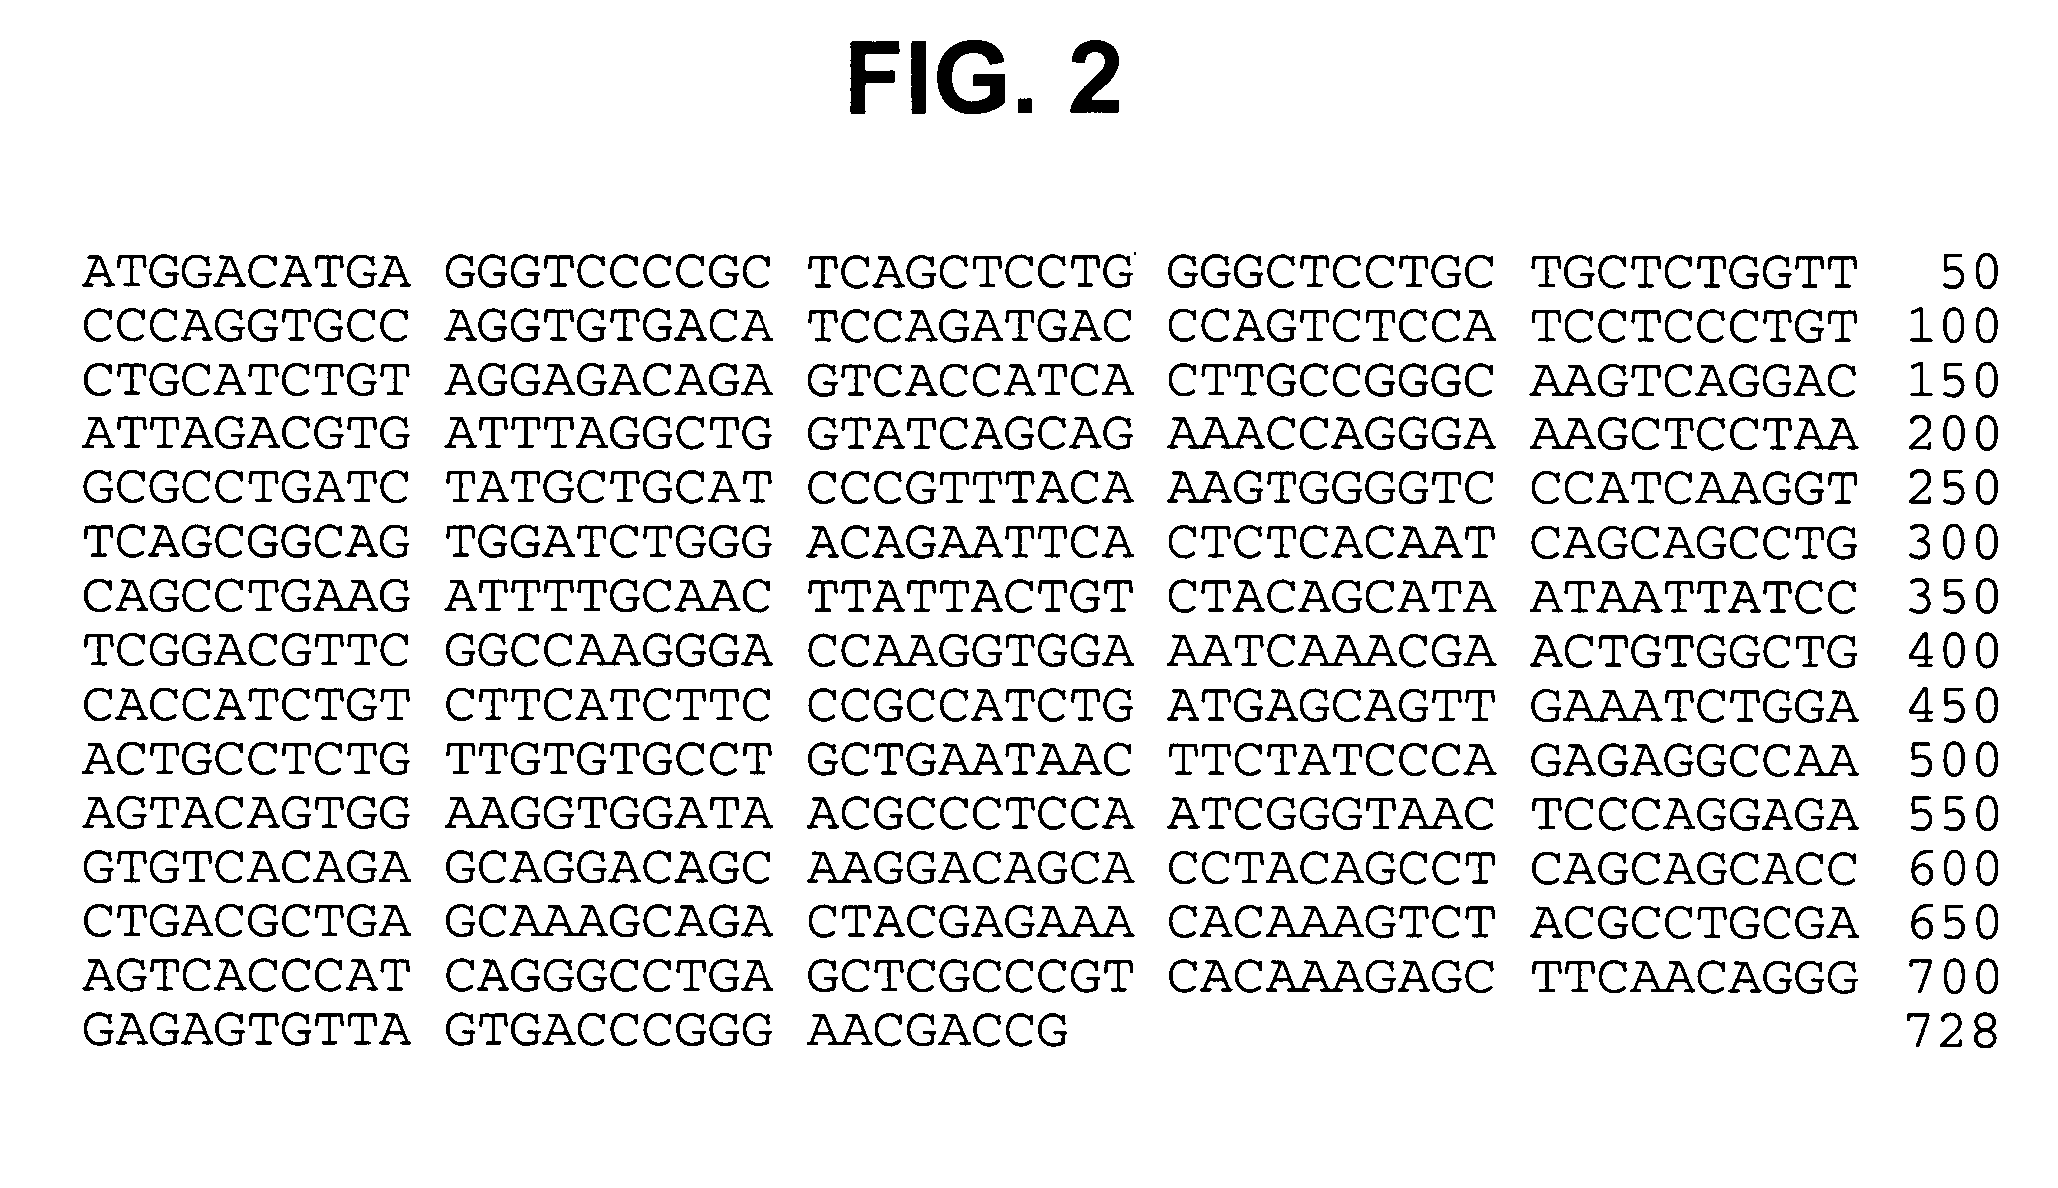 Modified human IGF-IR antibodies